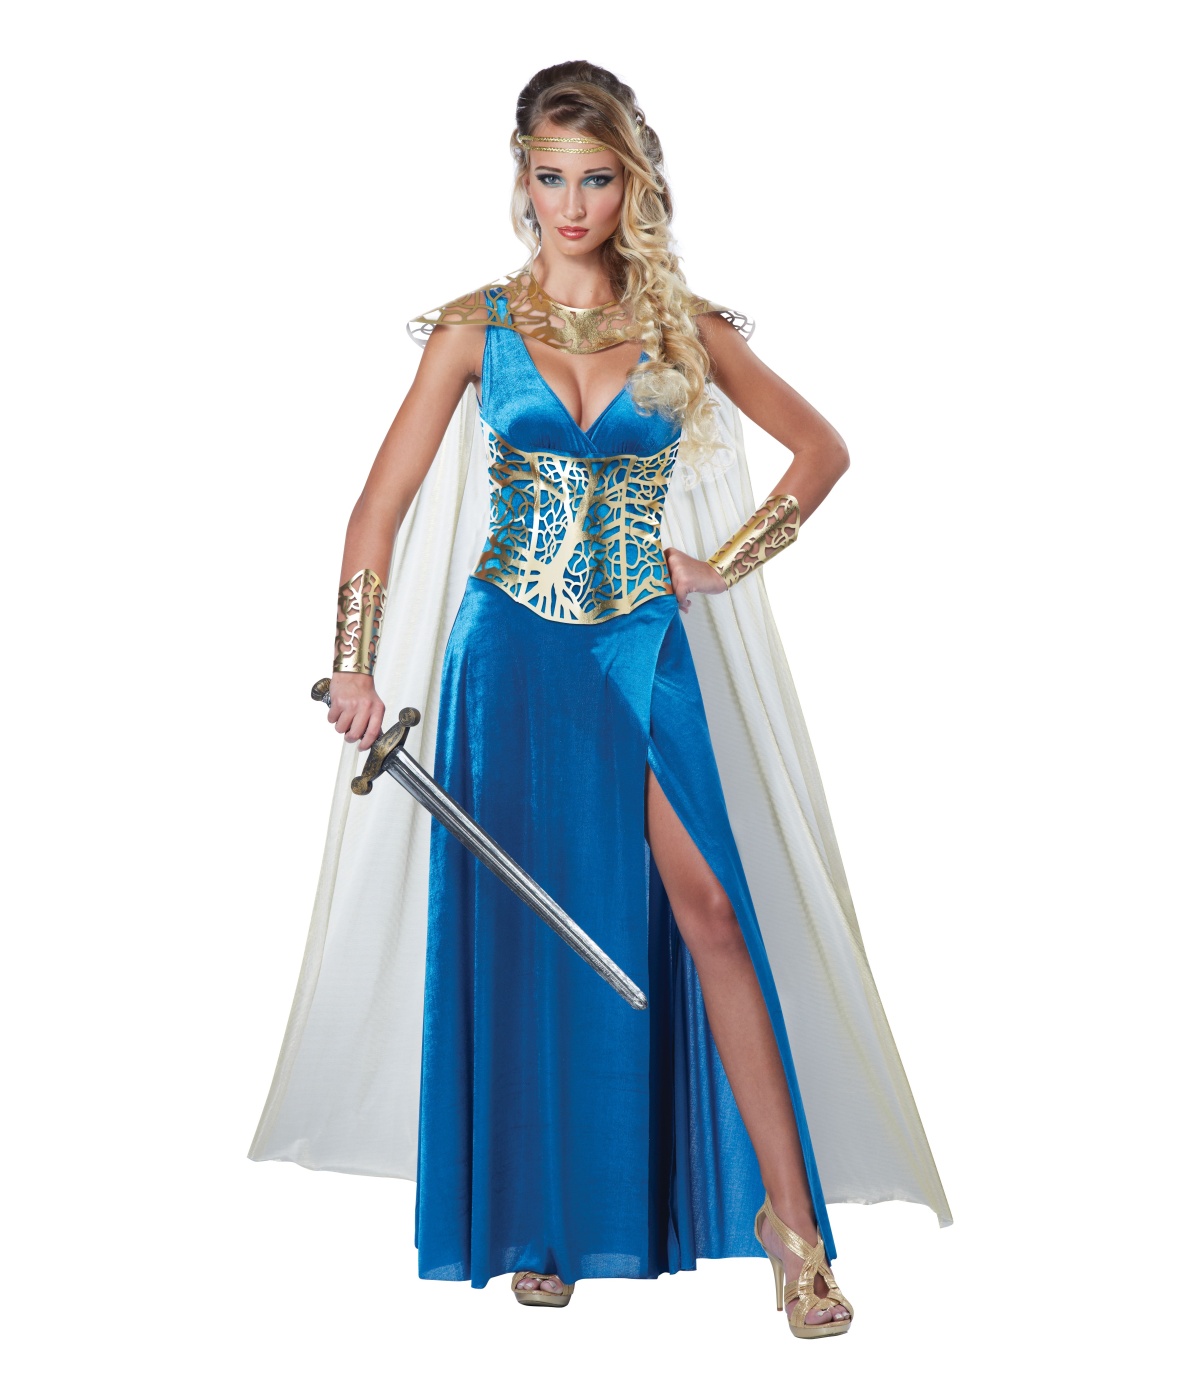  Warrior Queen Woman Costume